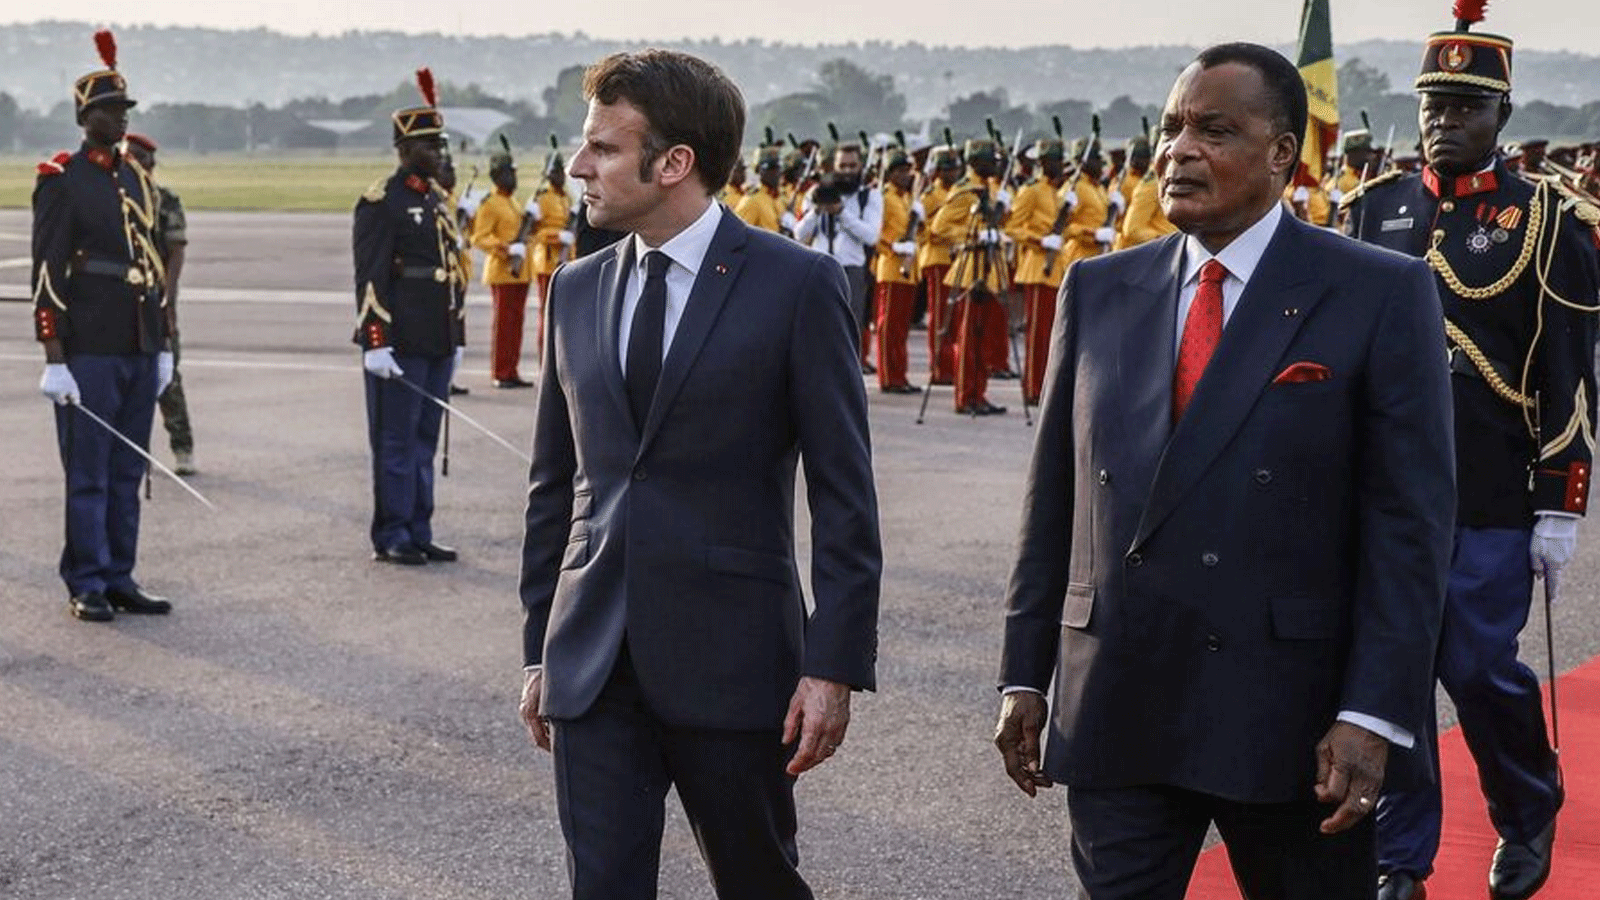 الرئيس دينيس ساسو نغيسو يستقبل نظيره الفرنسي في المطار. برازافيل (الكونغو)، يوم الجمعة 3 آذار\مارس 2023